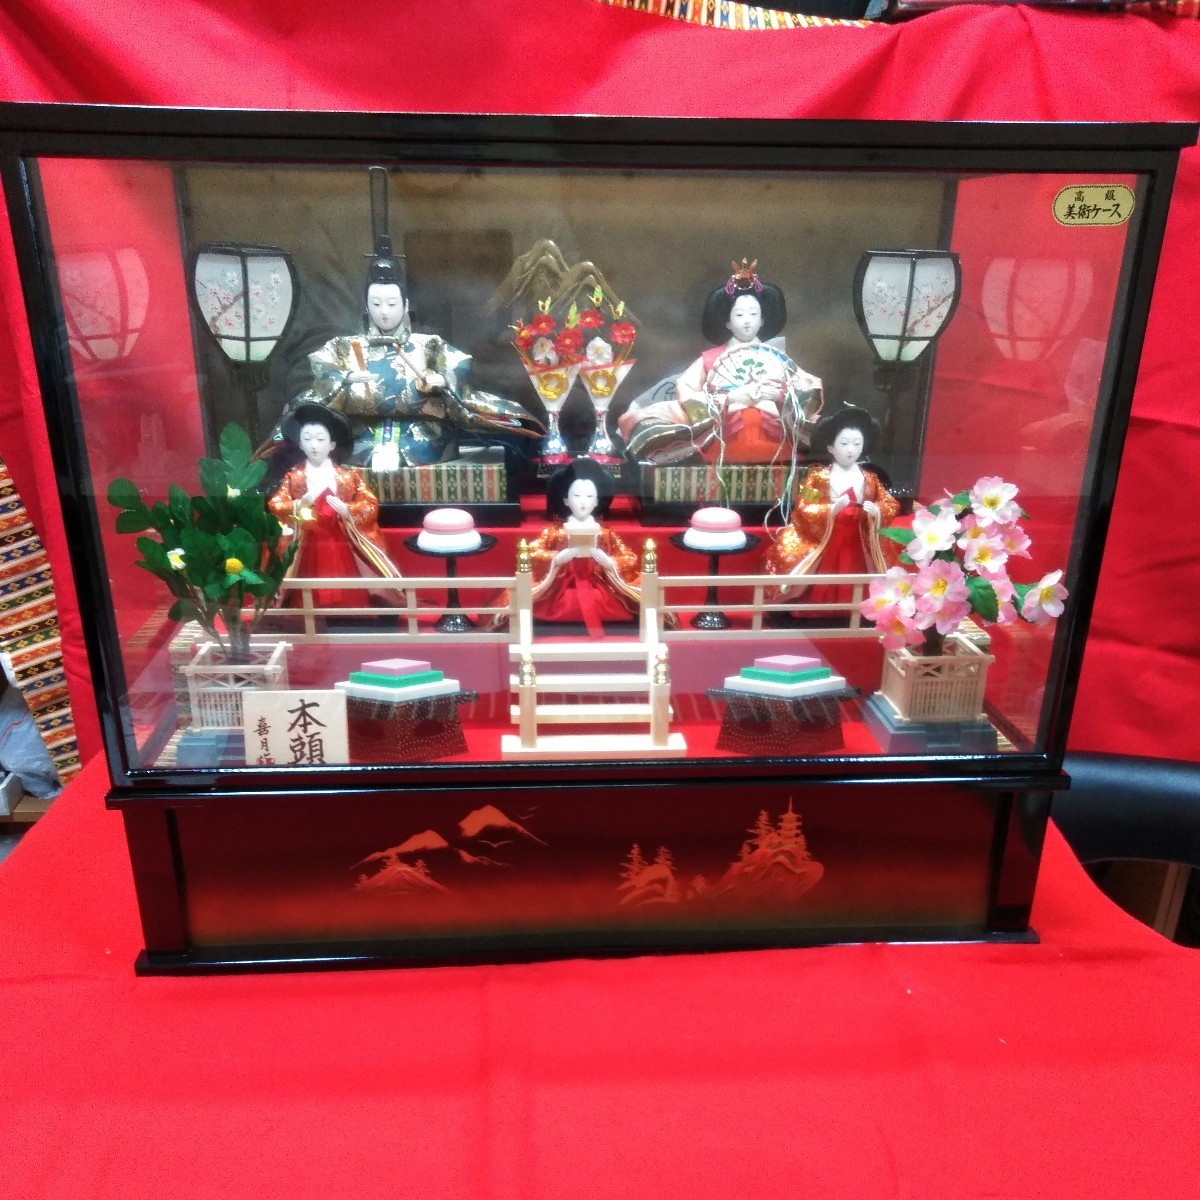 g_t R792 Showa Retro-Hina-Puppen in Glasgehäuse mit echten Köpfen von Kitsuki mit Spieluhr. Wie wäre es mit einer Puppendekoration für Hinamatsuri, Jahreszeit, Jährliche Veranstaltungen, Puppenfest, Hina-Puppen